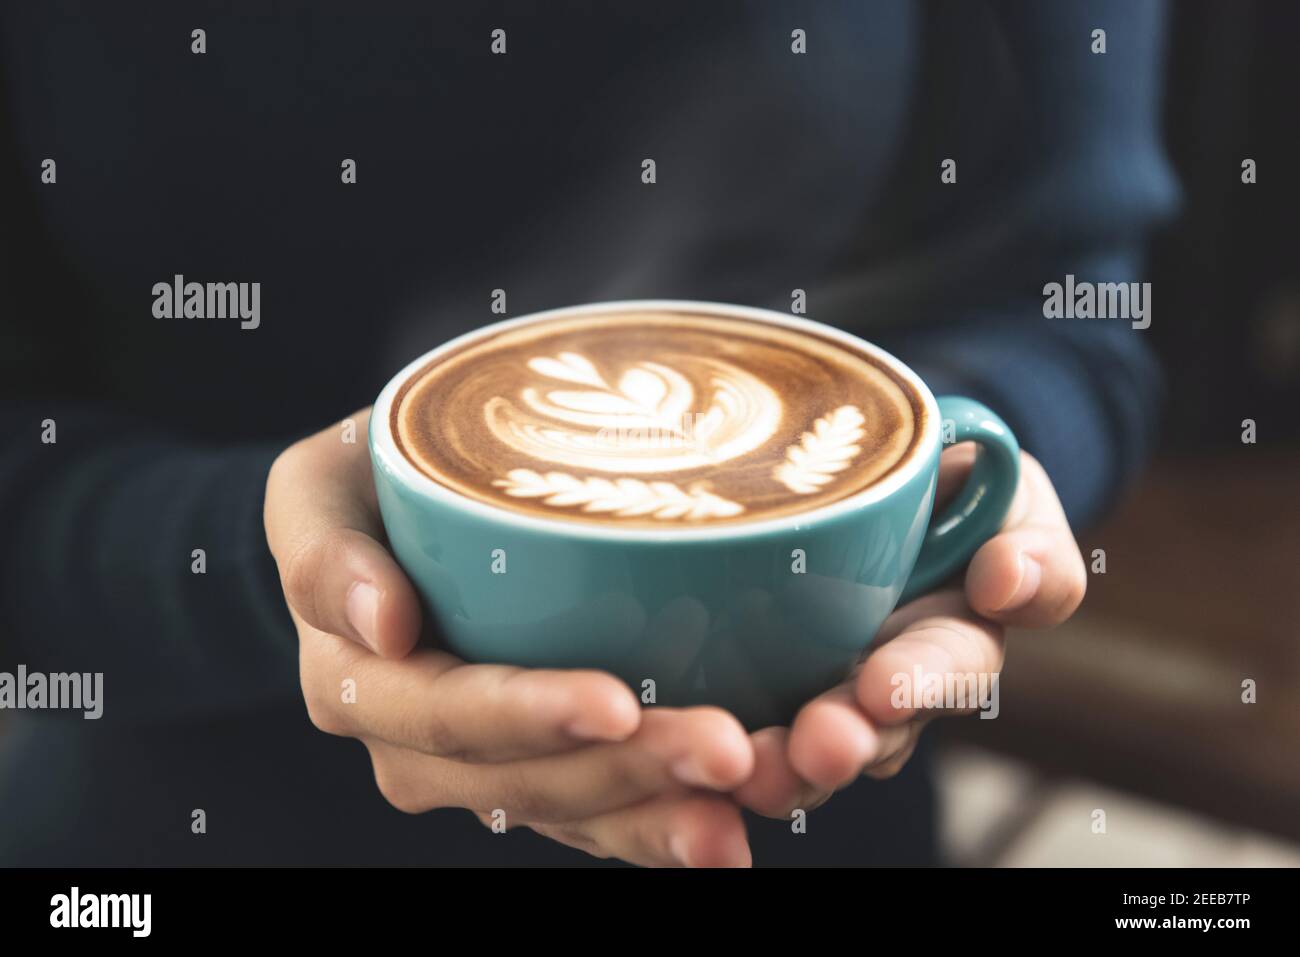 Le mani della donna tengono una tazza di caffè con Rosetta bella motivo latte art sulla superficie Foto Stock